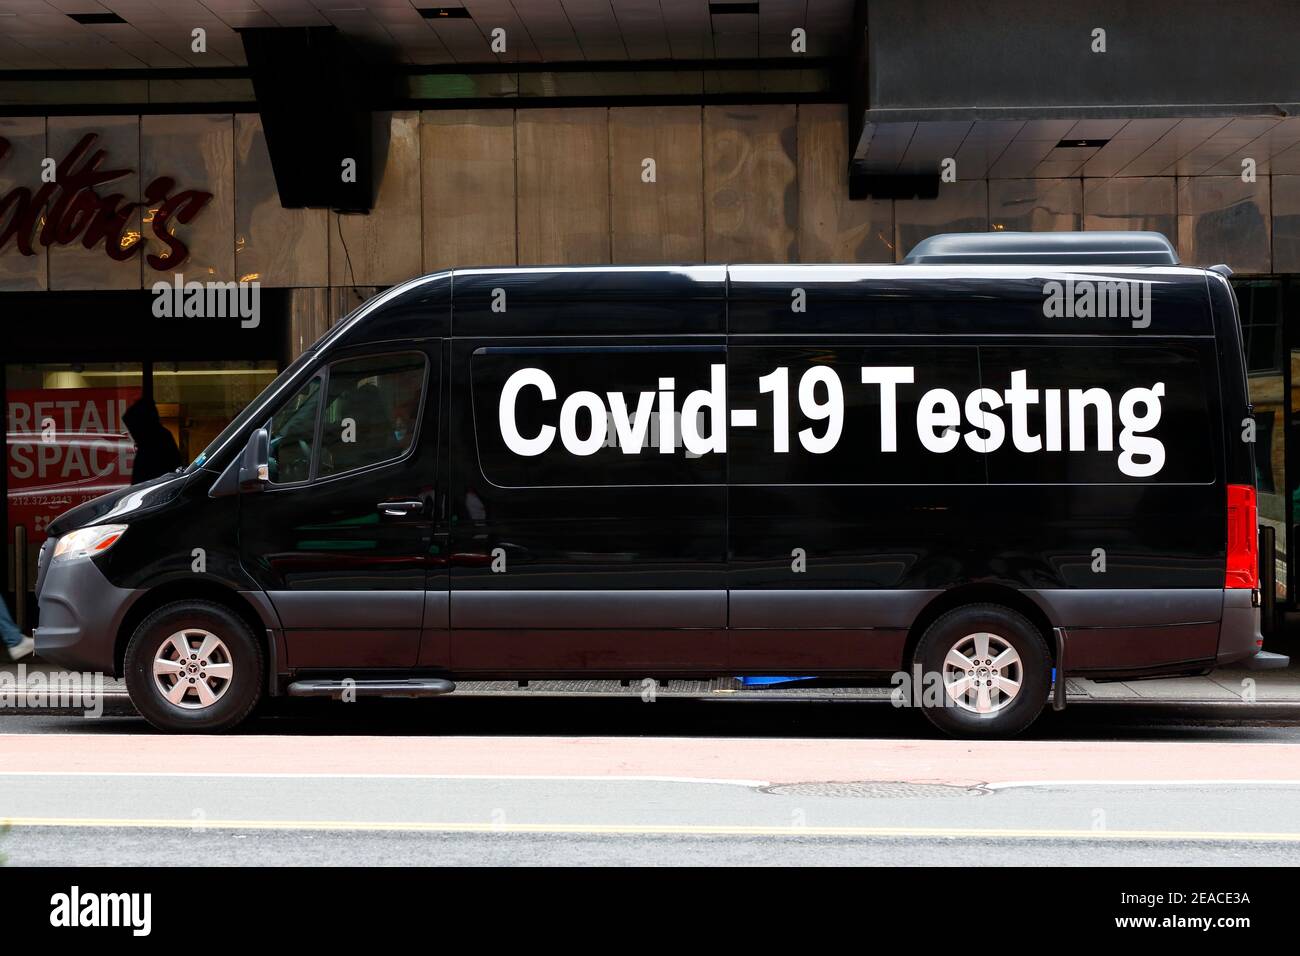 Ein schwarzer Transporter mit 'Covid-19 Testing' in großer Schrift bewirbt sich als Pop-up-Coronavirus-Testsite, New York, NY. Stockfoto